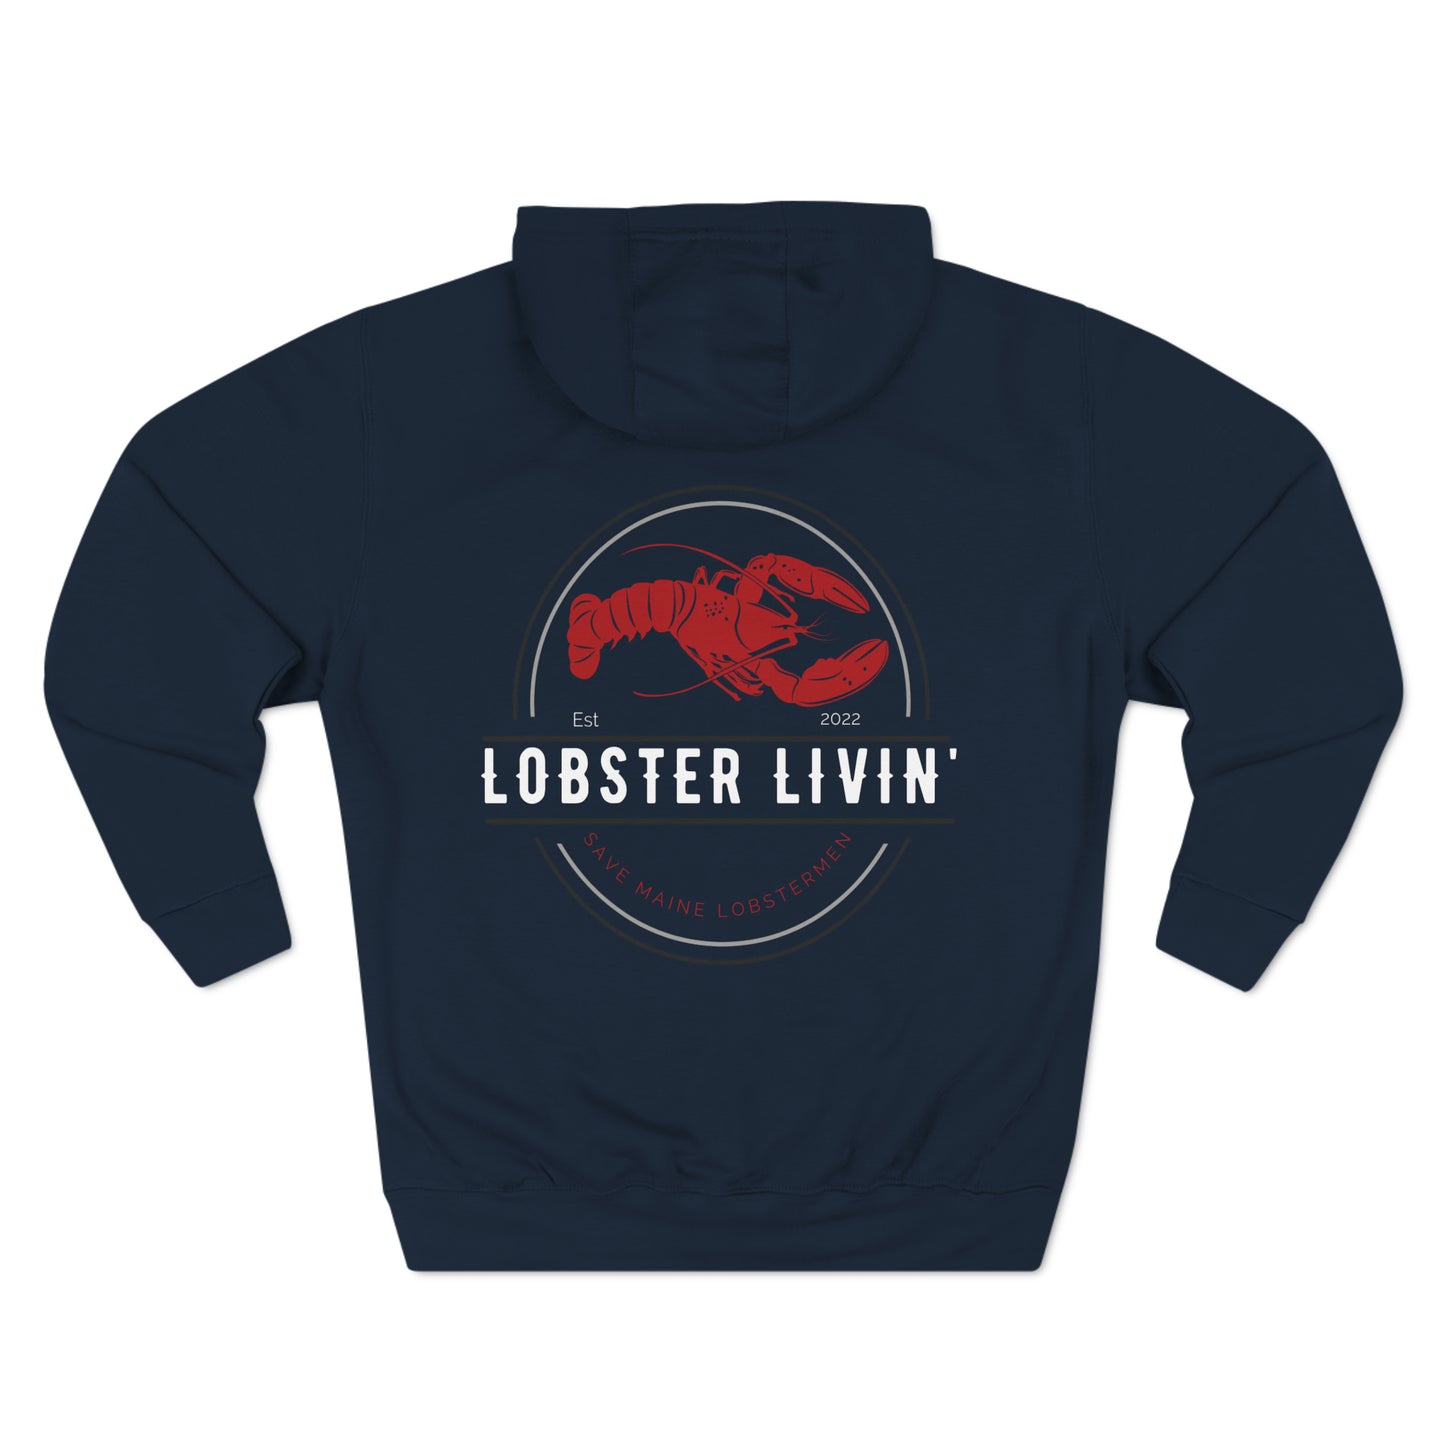 New Lobster Livin' Hoodie